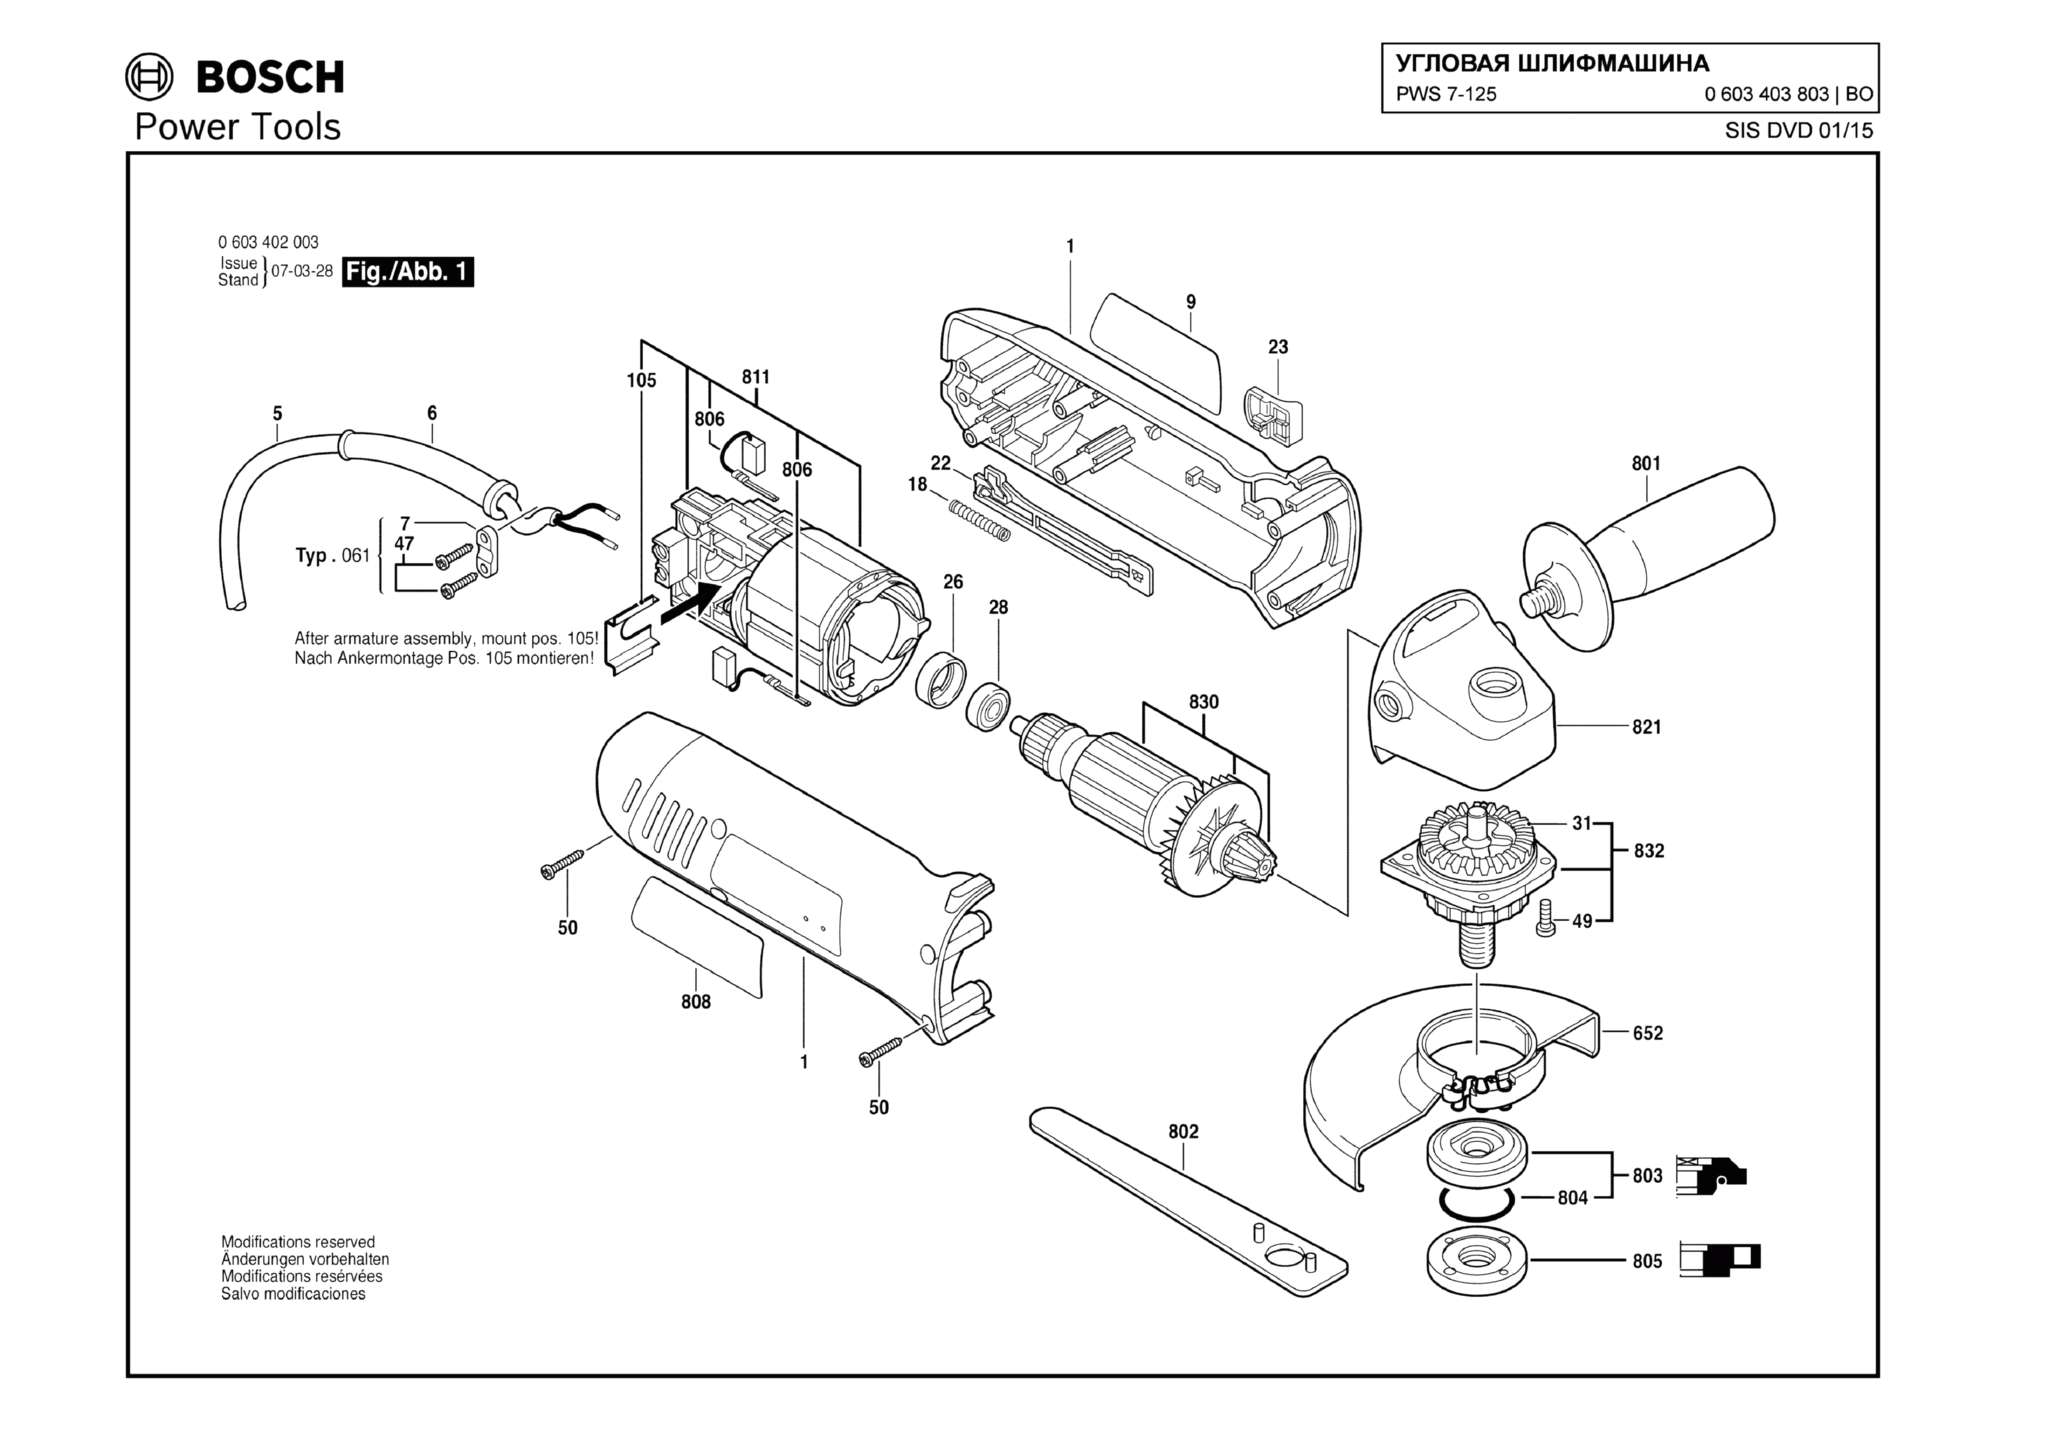 Запчасти, схема и деталировка Bosch PWS 7-125 (ТИП 0603403803)